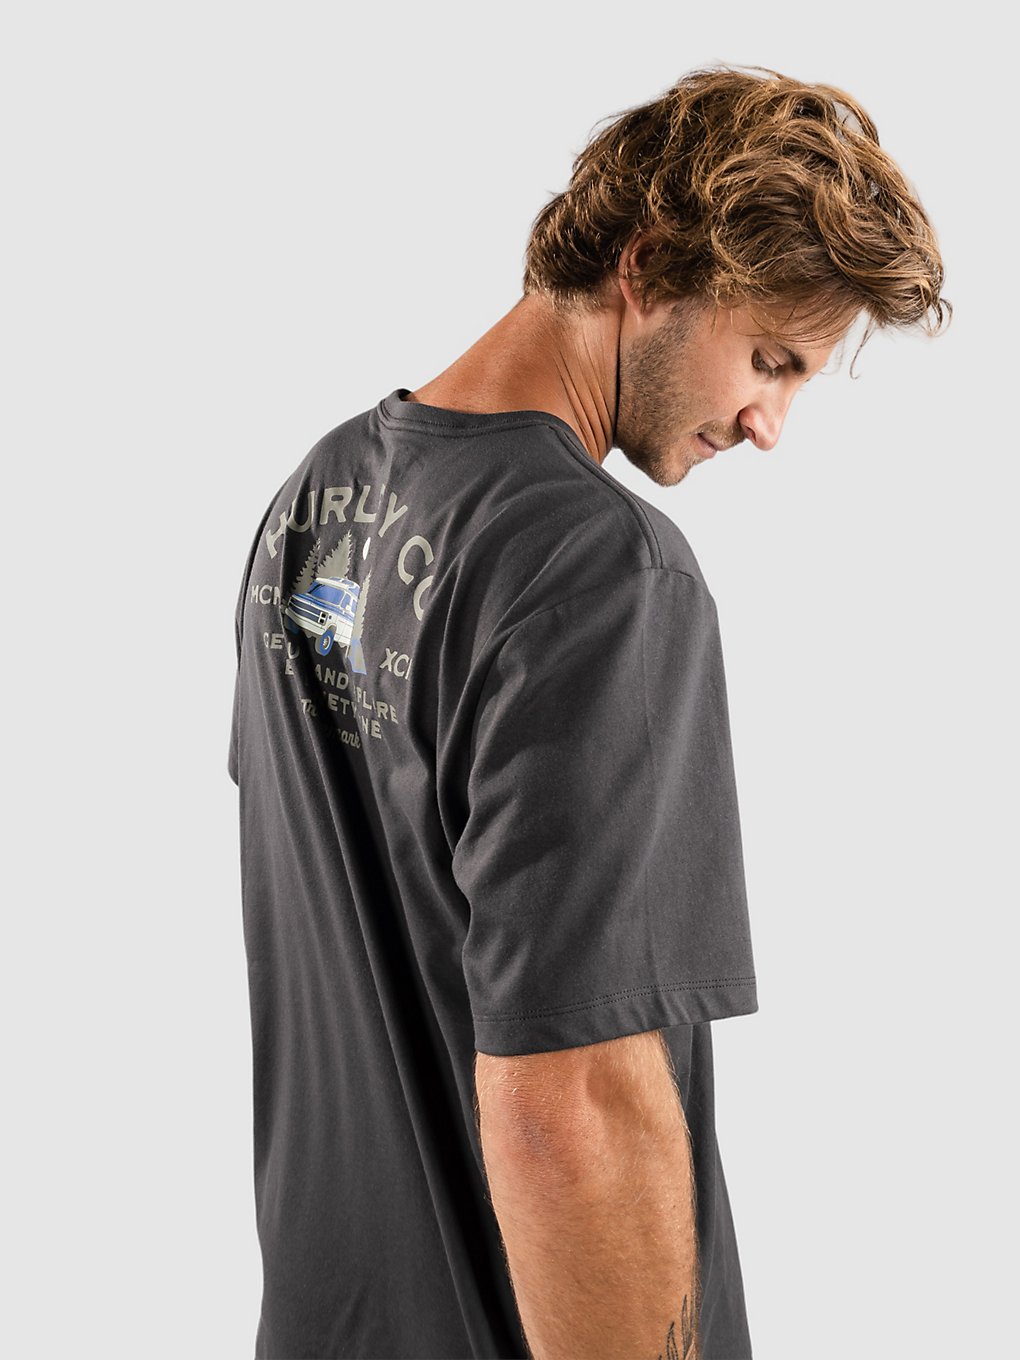 Hurley Evd Explr Campin T-Shirt grijs